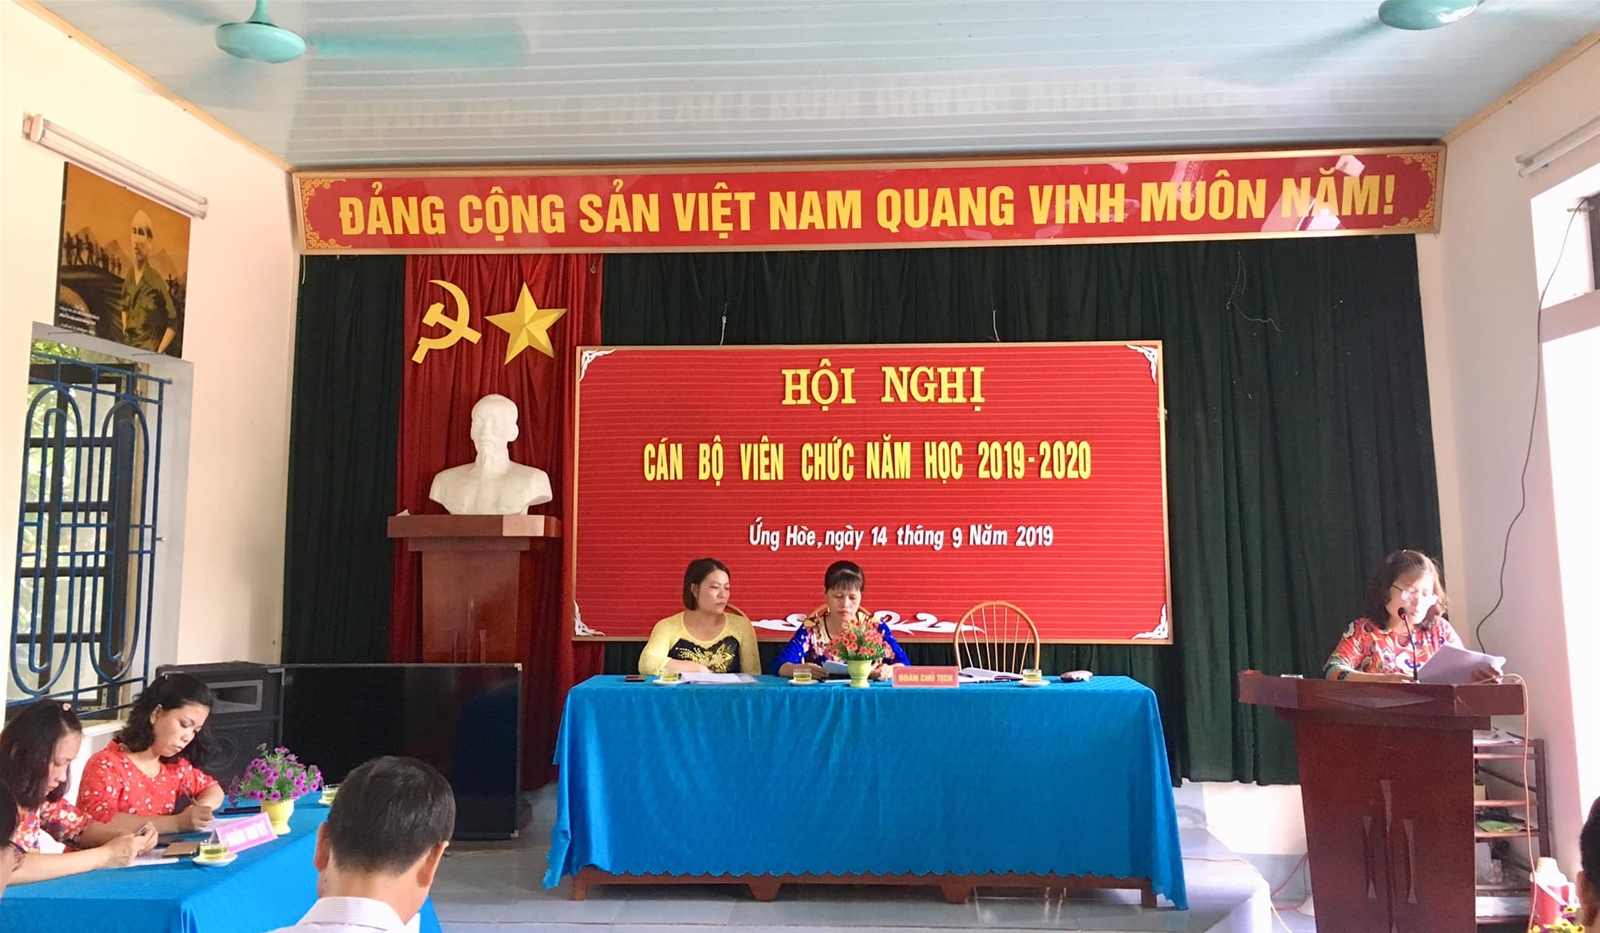 Đồng Chí Nguyễn Thị Oanh- Bí thư chi bộ , hiệu trưởng nhà trường thông qua báo cáo kết quả thực hiện nghị quyết năm học 2018-2019 và kế hoạch thực hiện nhiệm vụ năm học 2019-2020